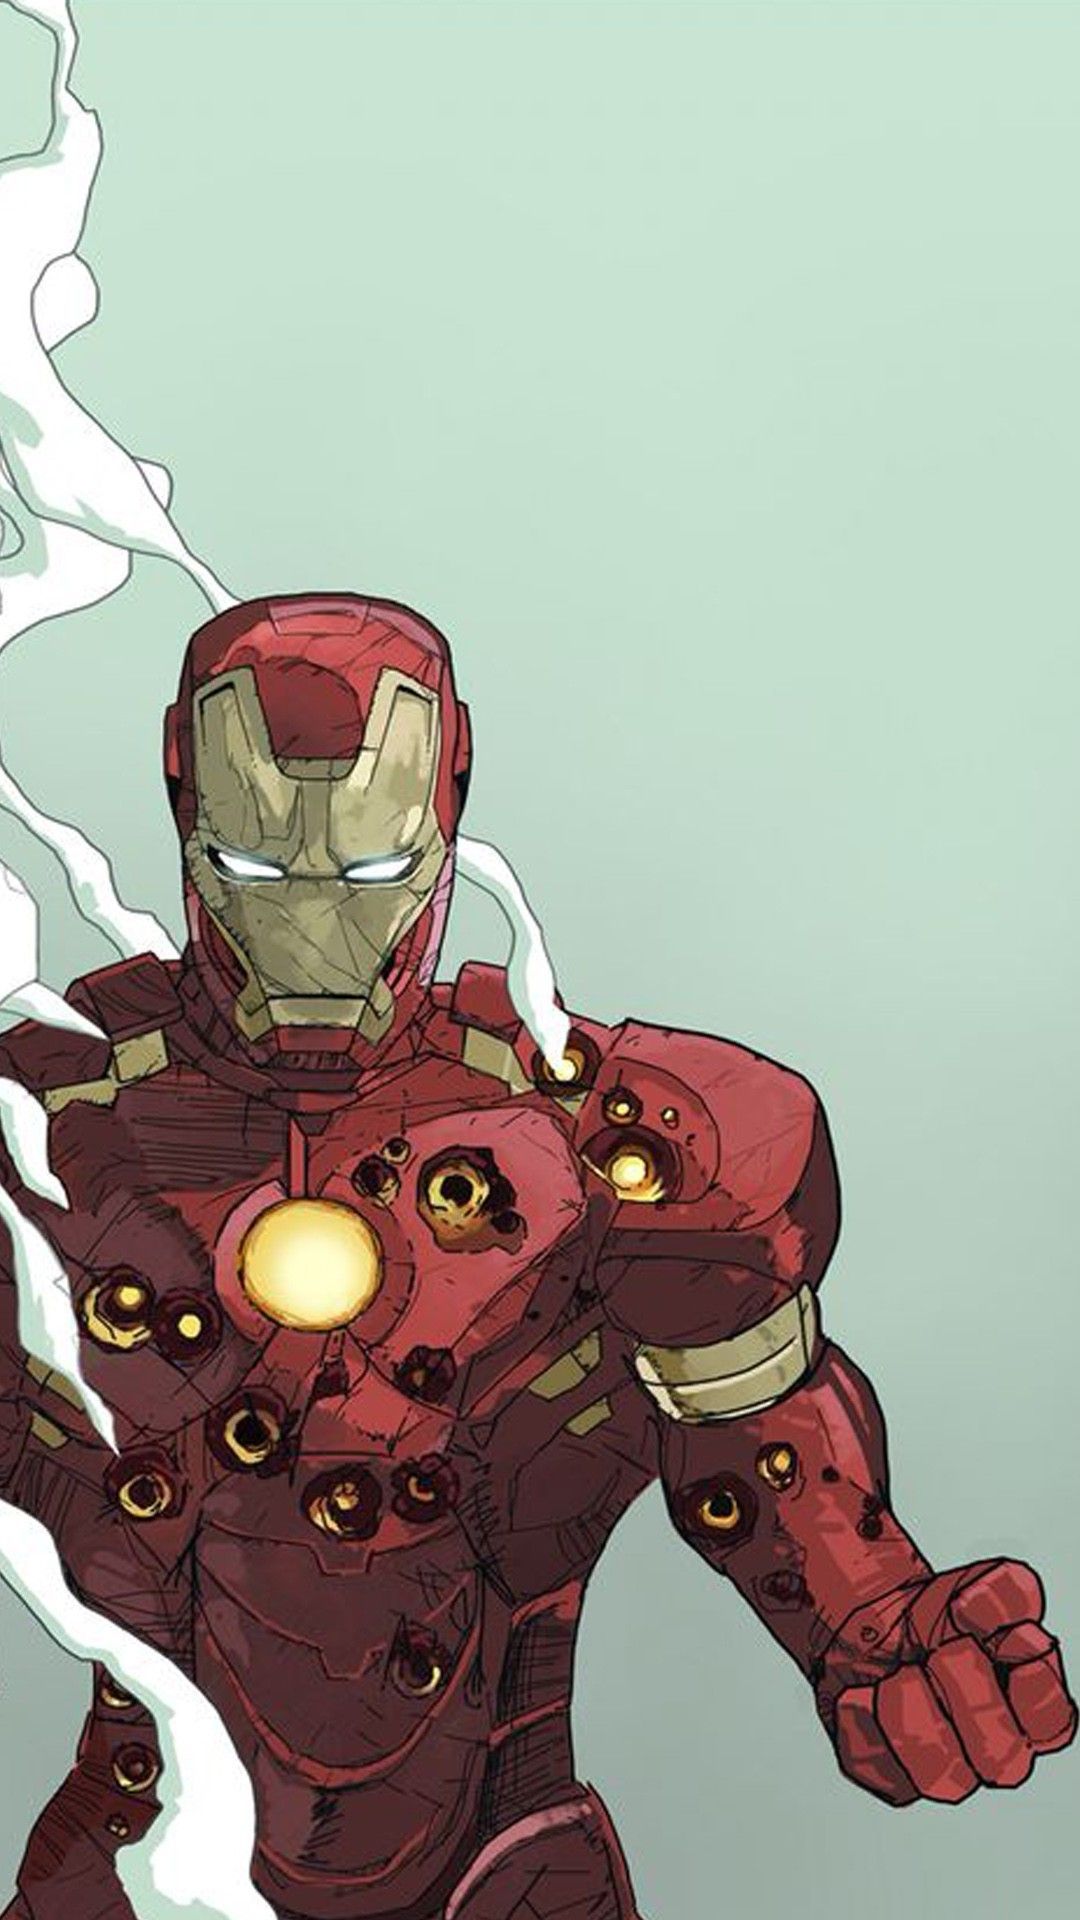  Iron Man Hintergrundbild 1080x1920. Iron Man Aesthetic Wallpaper Free Iron Man Aesthetic Background